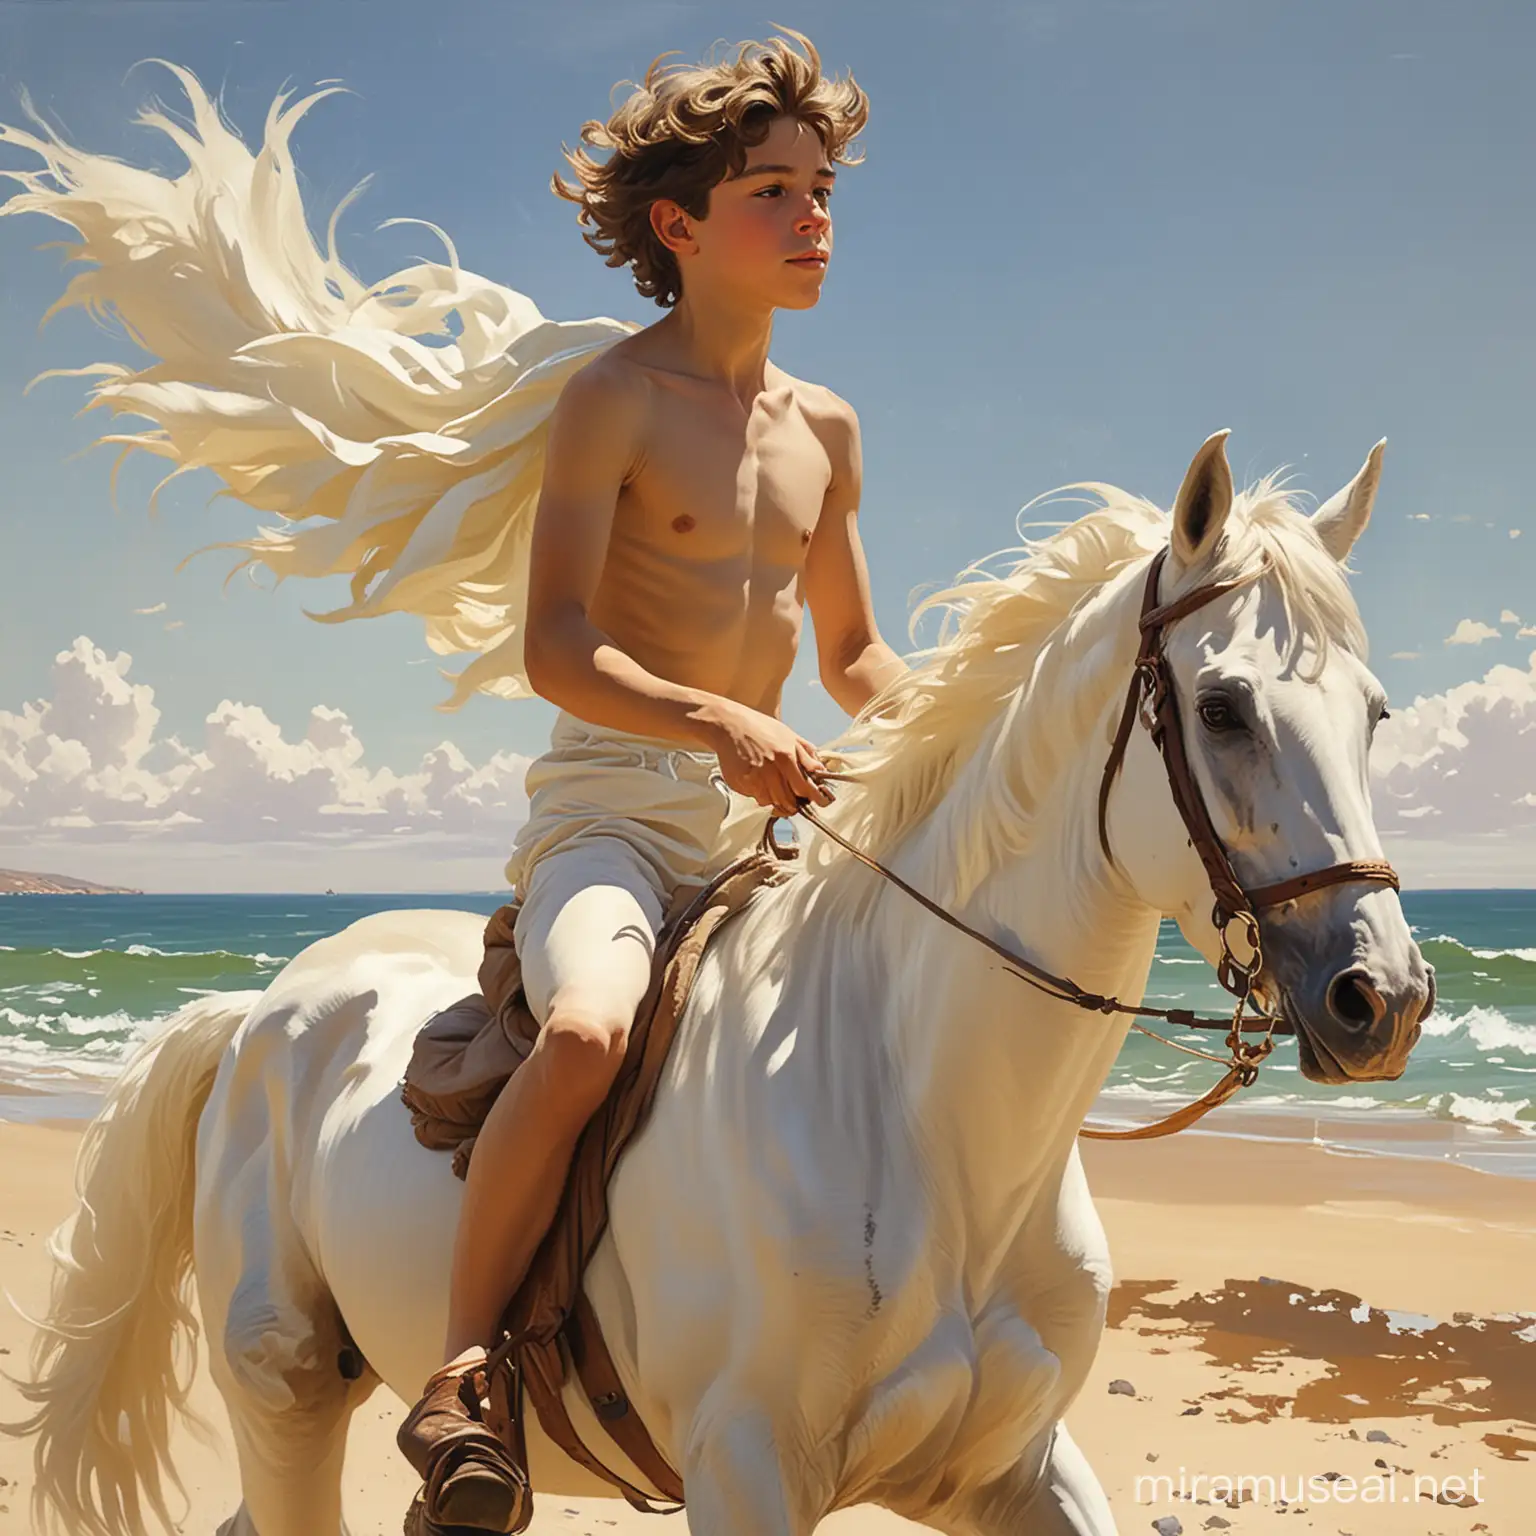 картина в стиле Хоакин Соролья, эпическая картина,  обнаженный мальчик 12 лет, скачет на белом коне,контрожурное освещенье,ветер обдувает волосы,